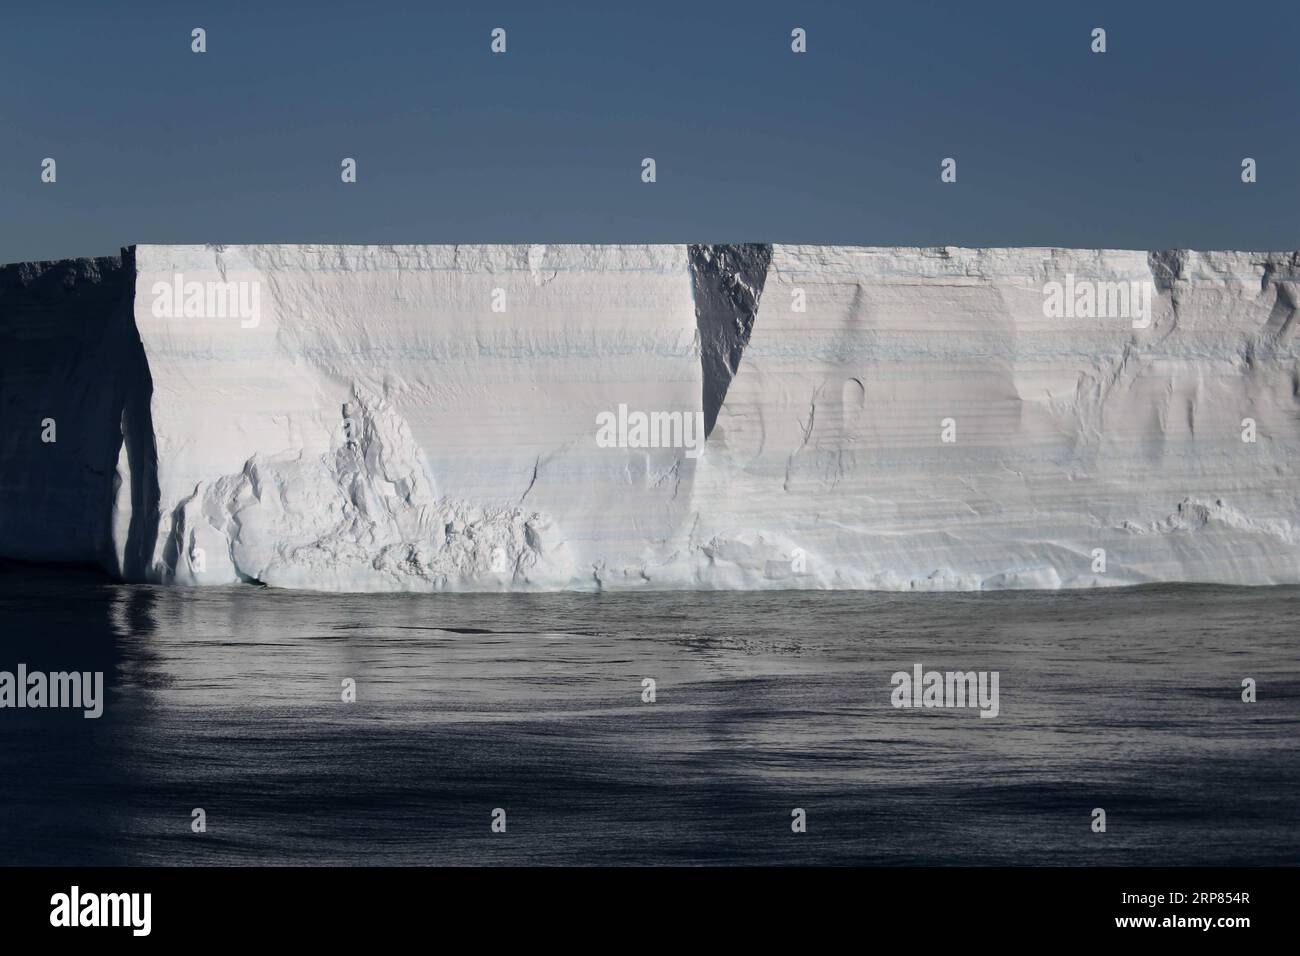 (190218) -- AN BORD VON XUELONG, 18. Februar 2019 (Xinhua) -- Foto vom 14. Februar 2019 zeigt einen Eisberg auf dem Meer in der Nähe der Zhongshan Station, einer chinesischen Forschungsbasis in der Antarktis. Der Bahnhof Zhongshan wurde im Februar 1989 eingerichtet. Innerhalb von zehn Kilometern zur Station sind Eisschild, Gletscher und Eisberg zu sehen. (Xinhua/Liu Shiping) ANTARKTIS-CHINA-ZHONGSHAN STATION PUBLICATIONxNOTxINxCHN Stockfoto